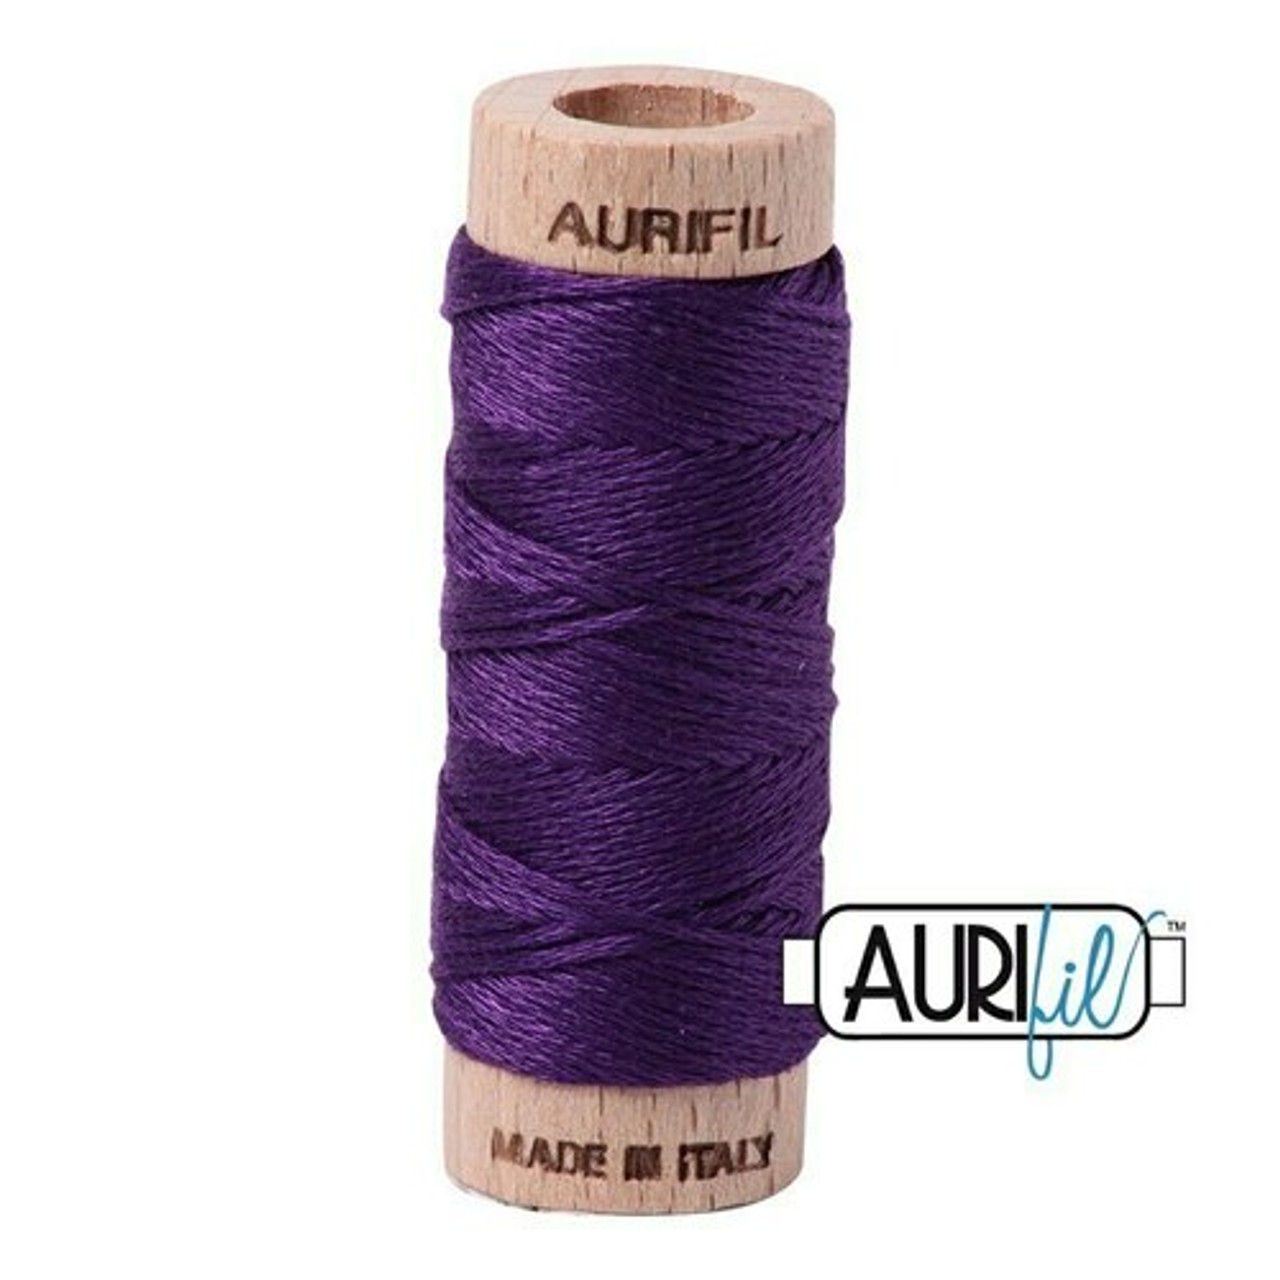 Aurifil 2545 - Medium Purple